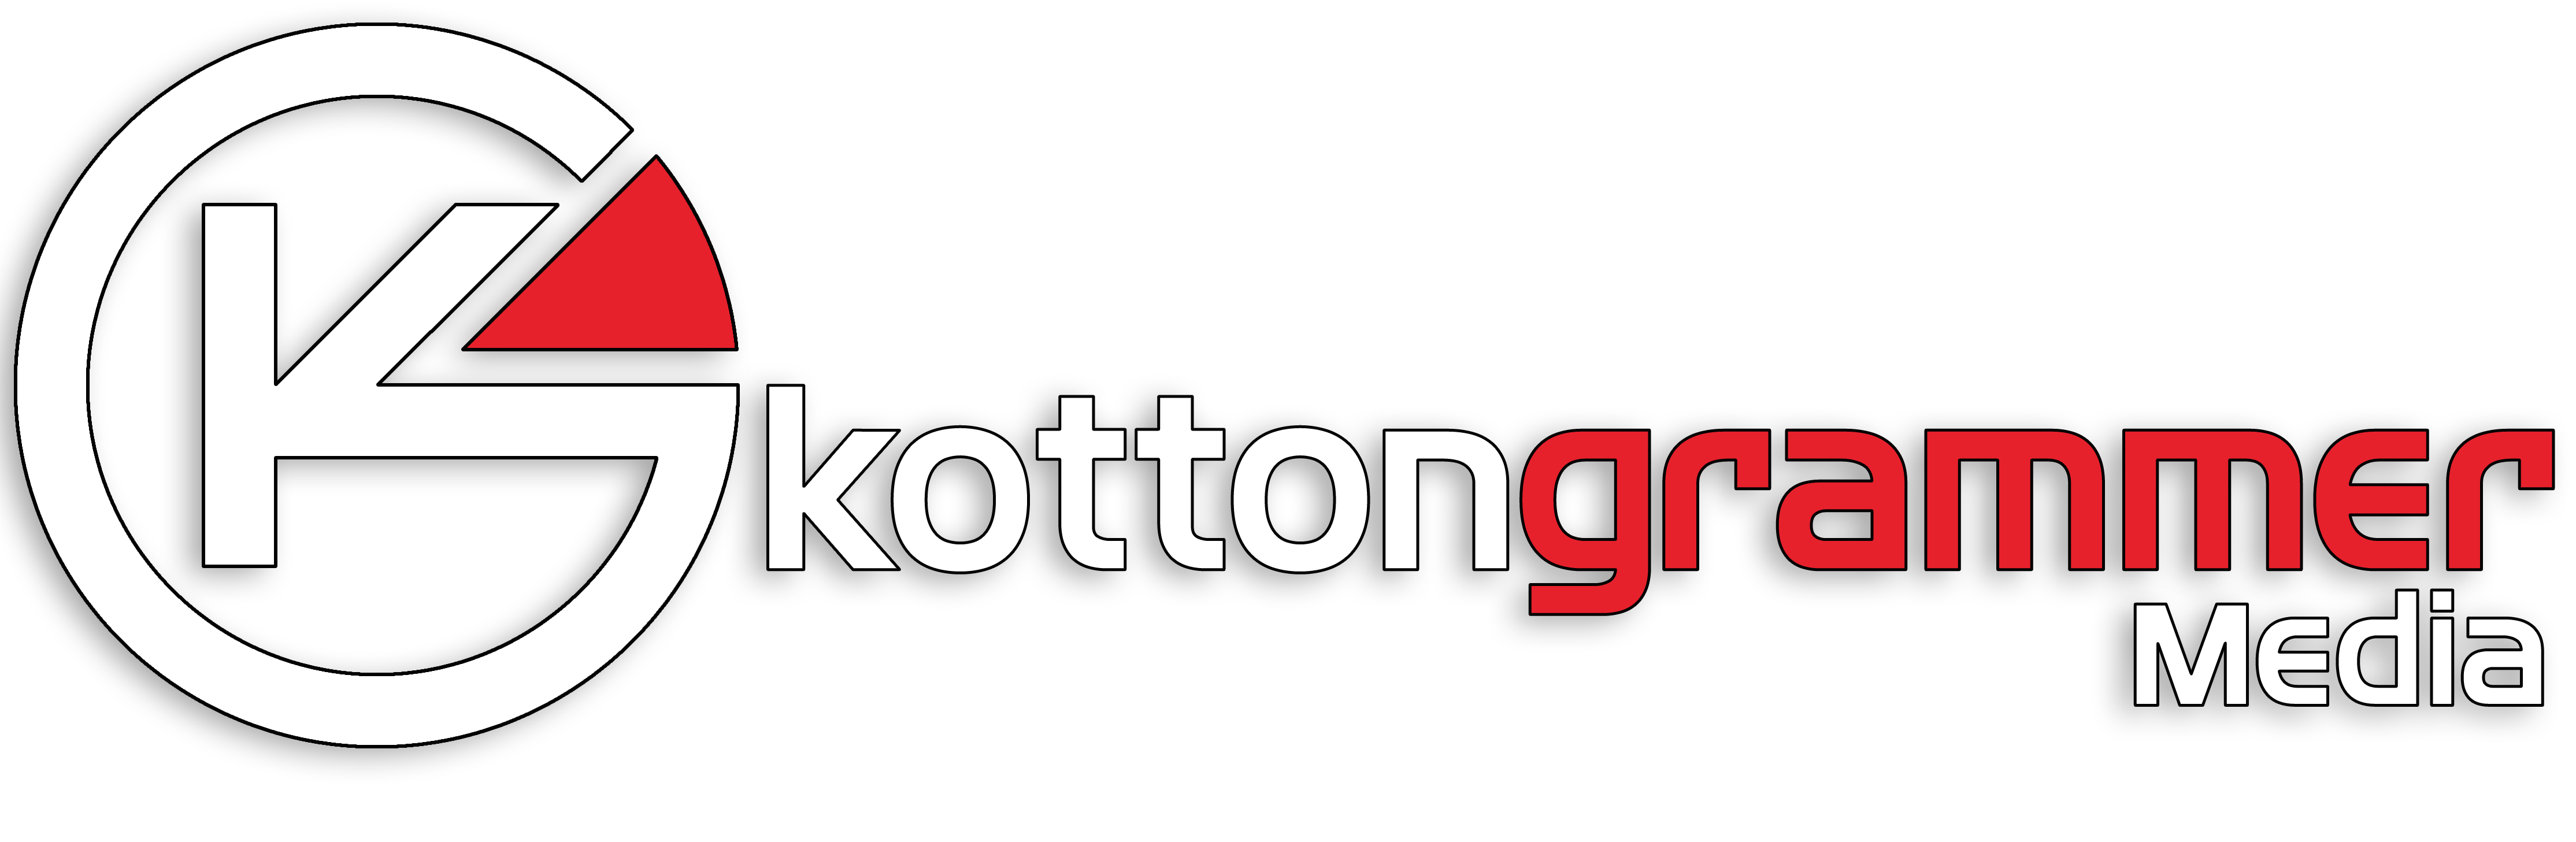 Kotton Grammer Media's Logo